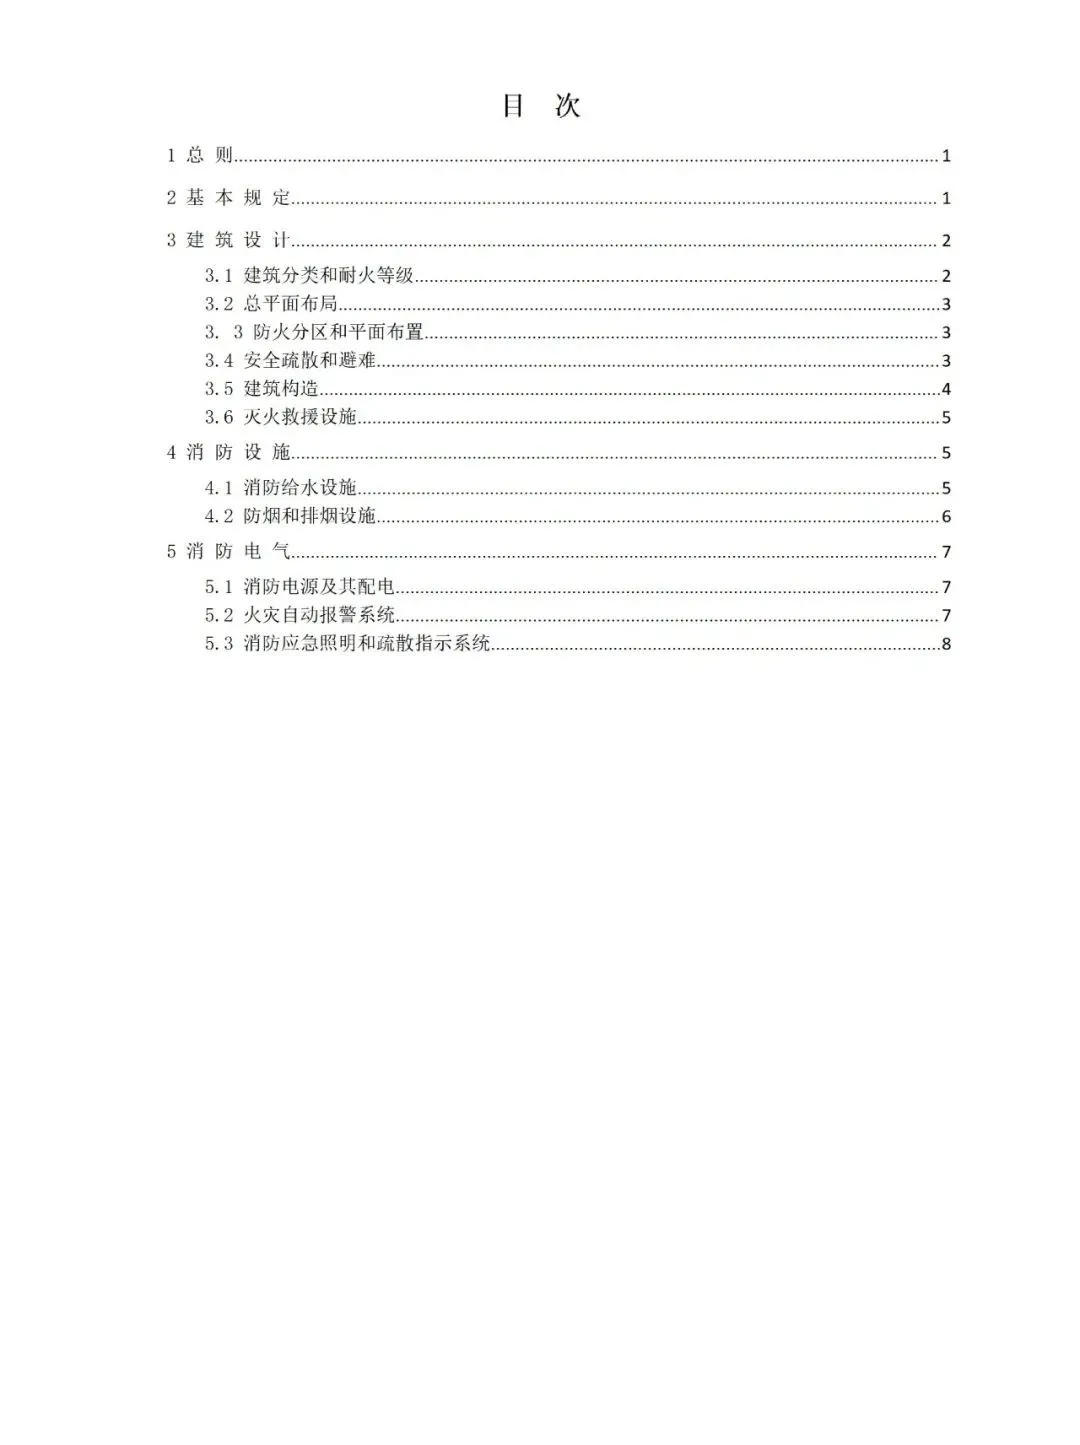 北京市既有建筑改造工程消防设计指南